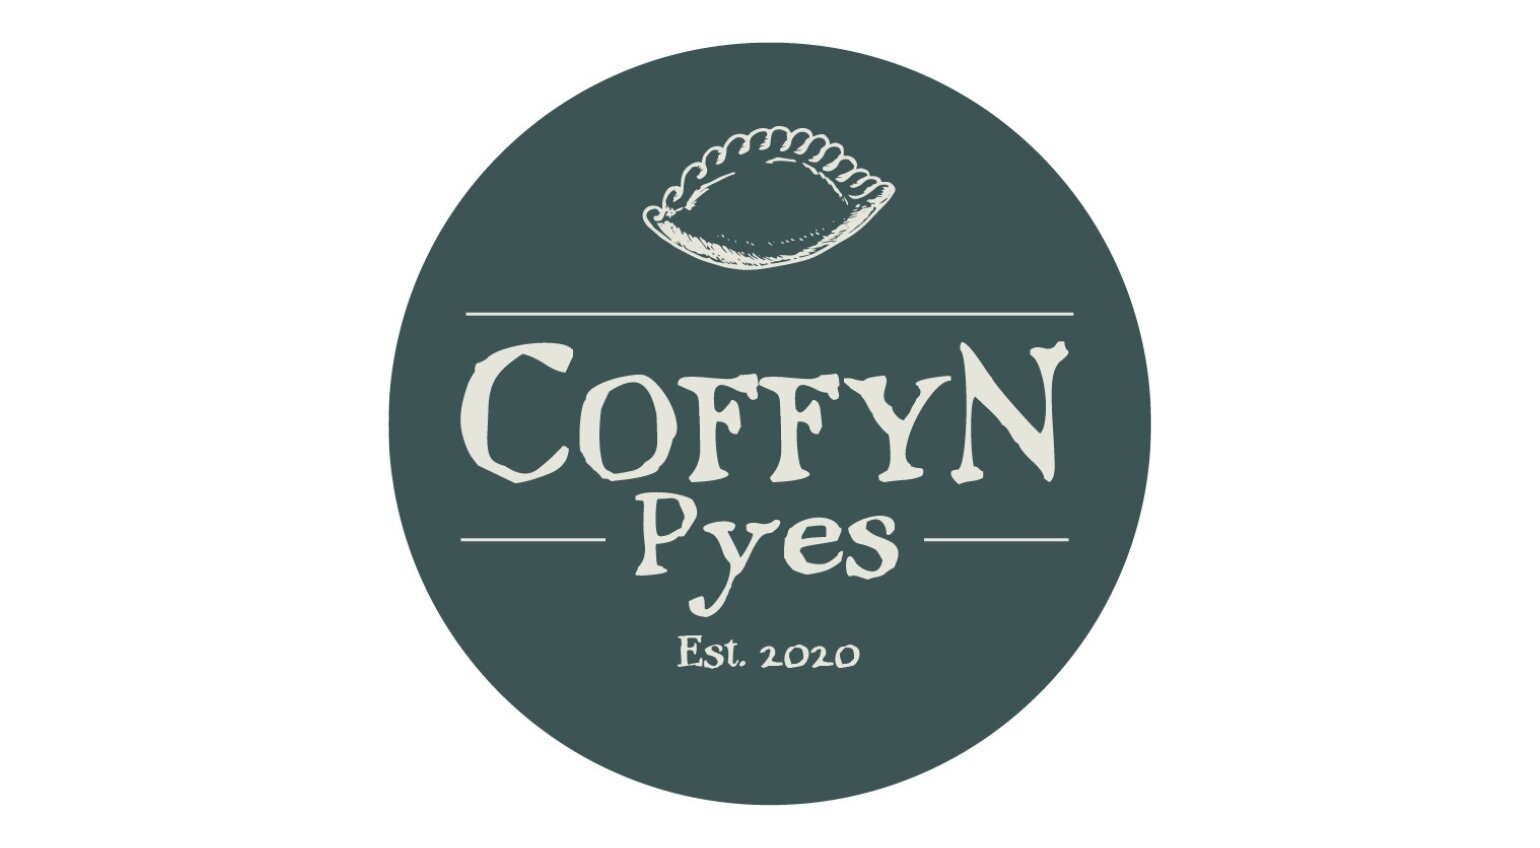 Coffyn Pyes